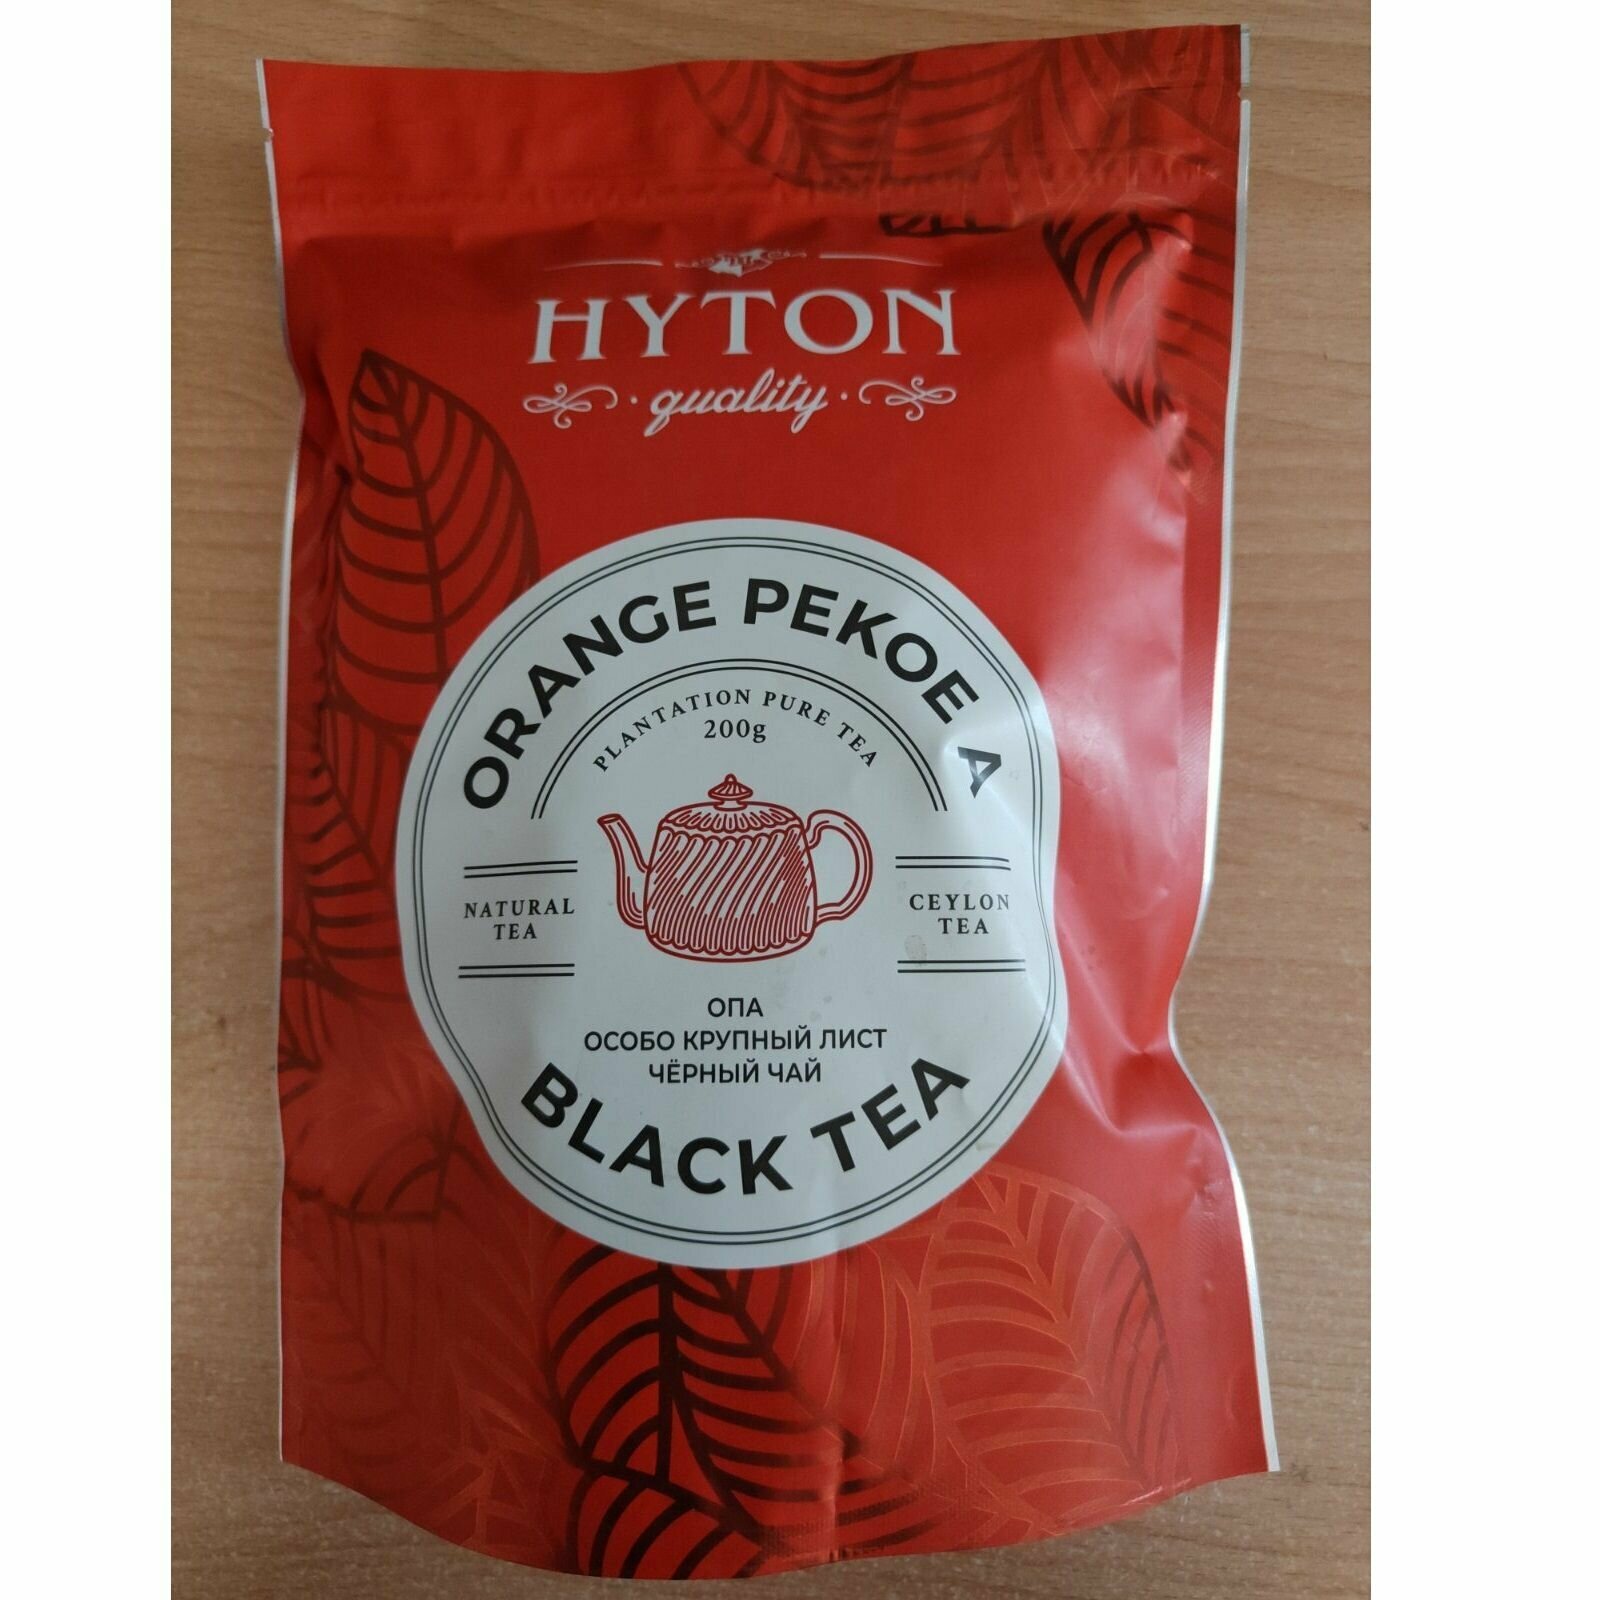 Чай HYTON чёрный особо крупный лист OPA. Набор из 2х пачек по 200г